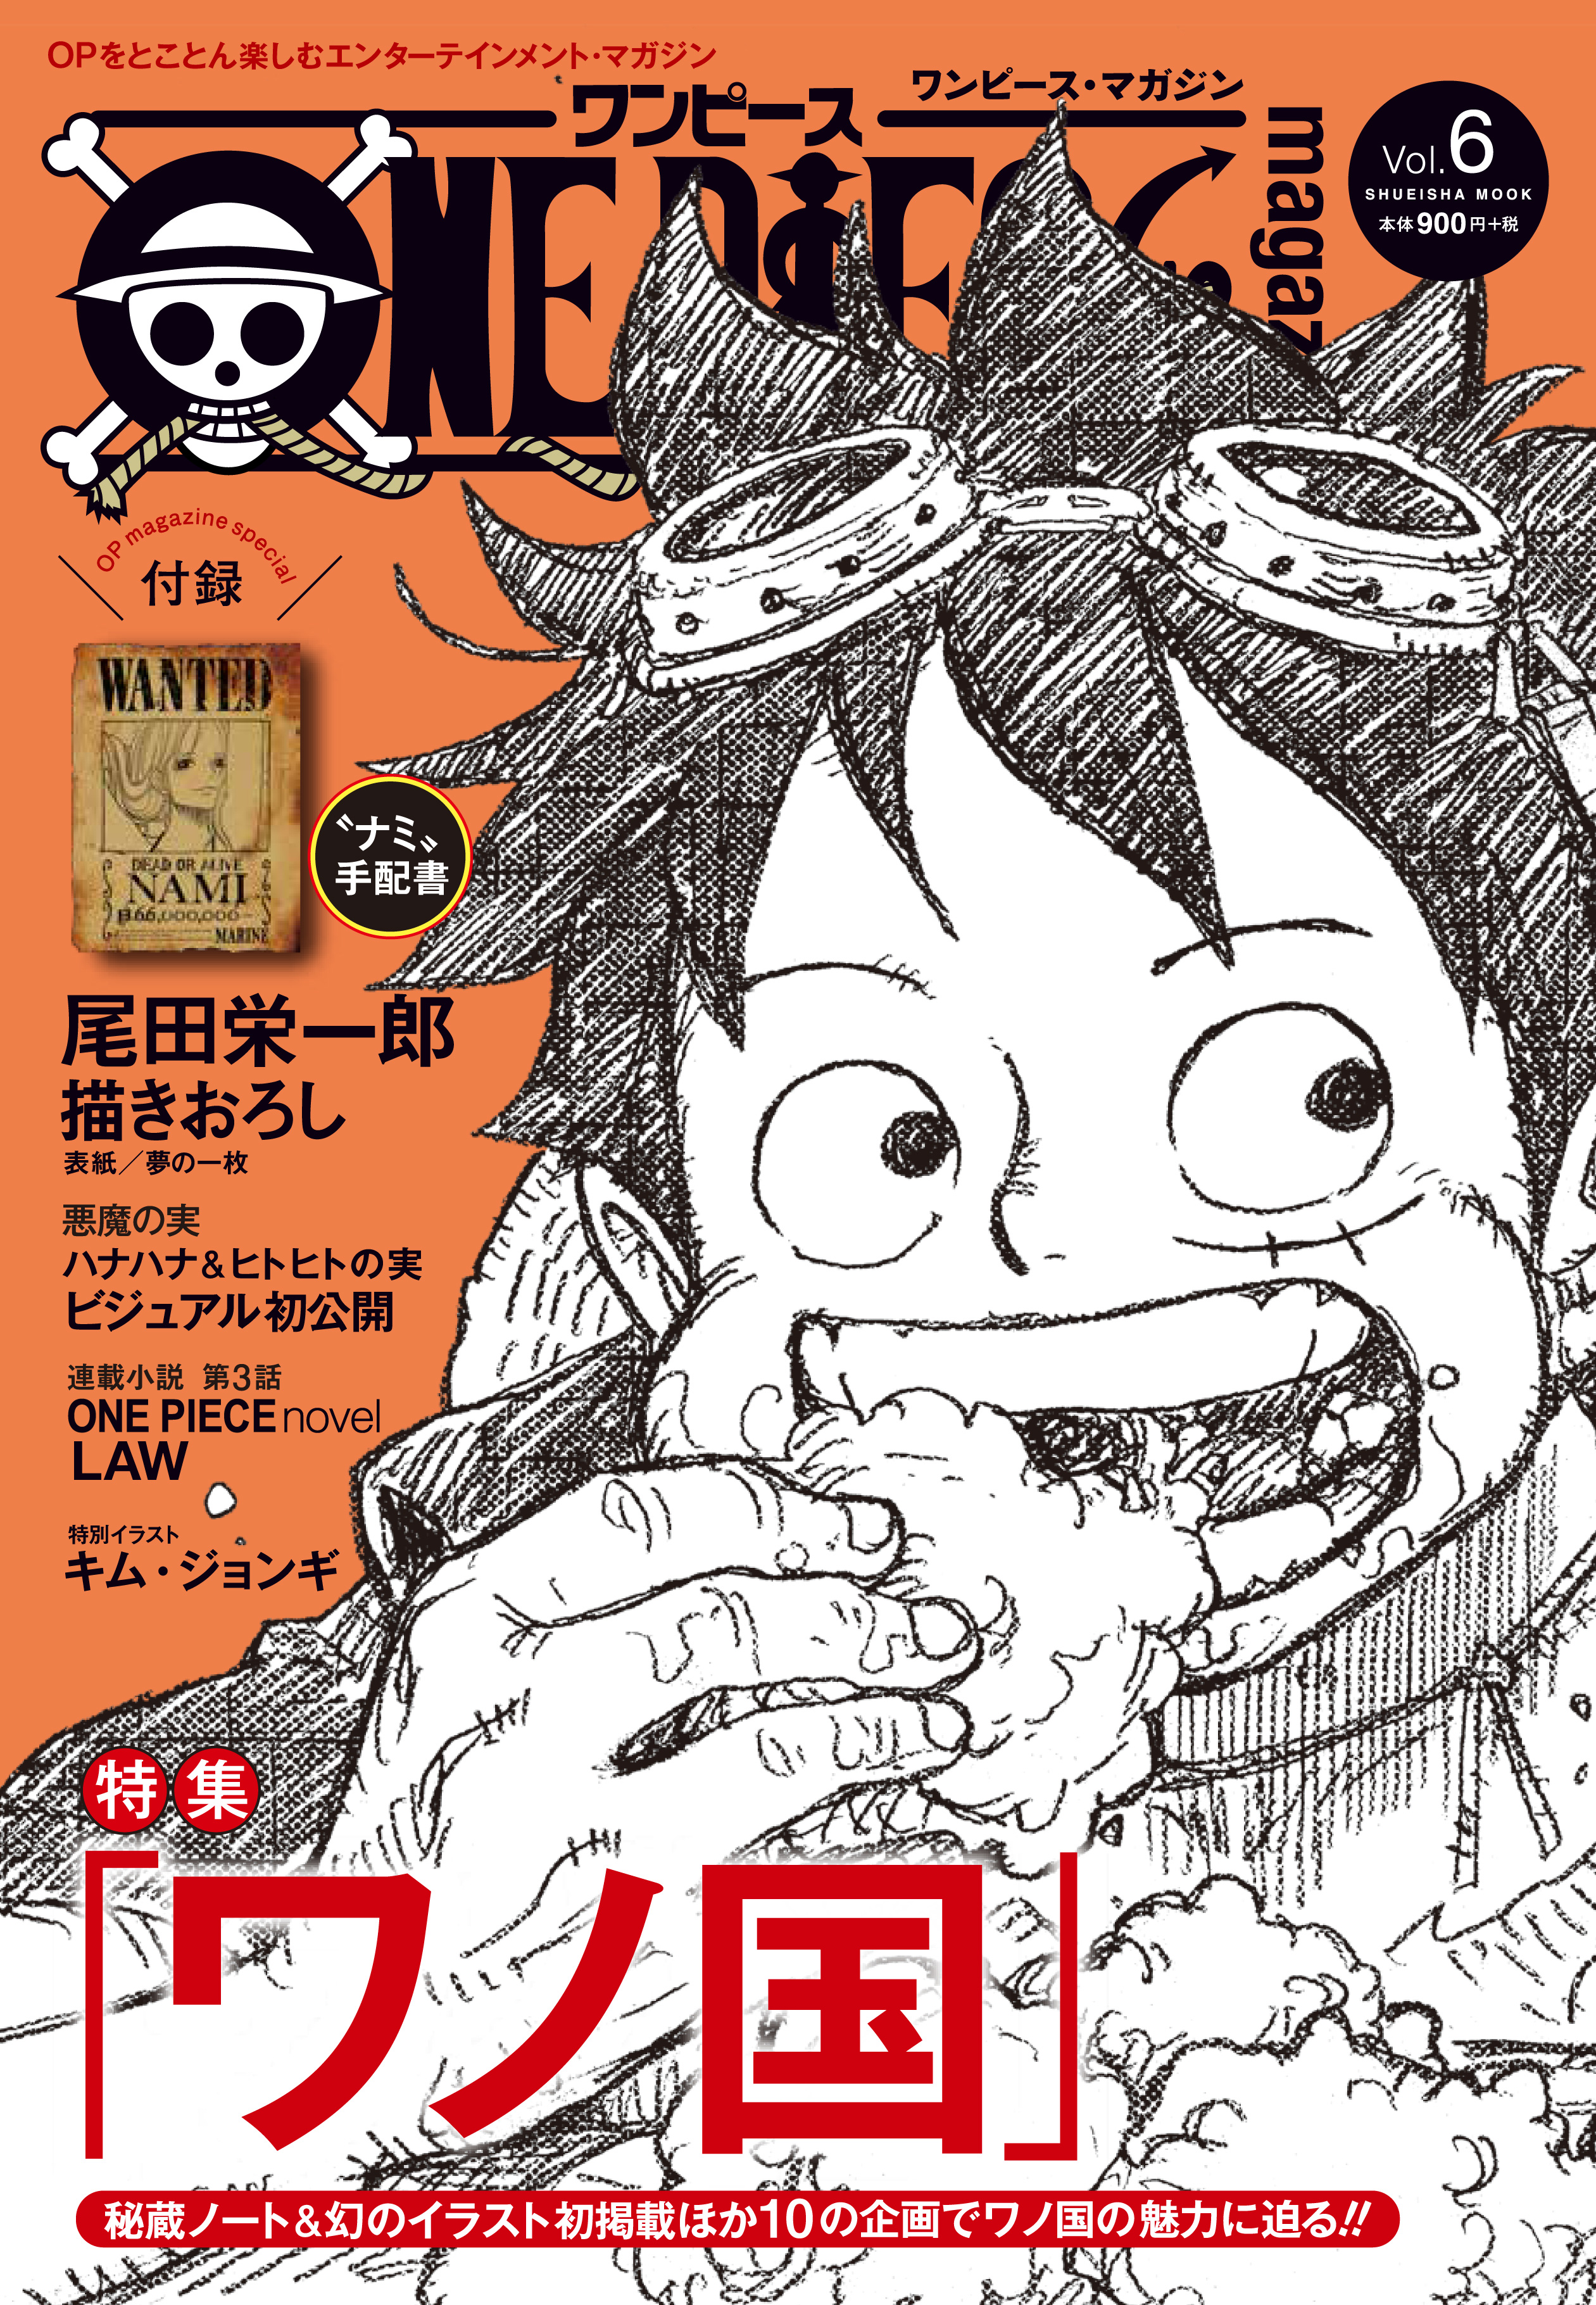 One Piece Magazine Vol 6 5 24発売 にgreeeenのインタビュー記事が掲載 Greeeen オフィシャル